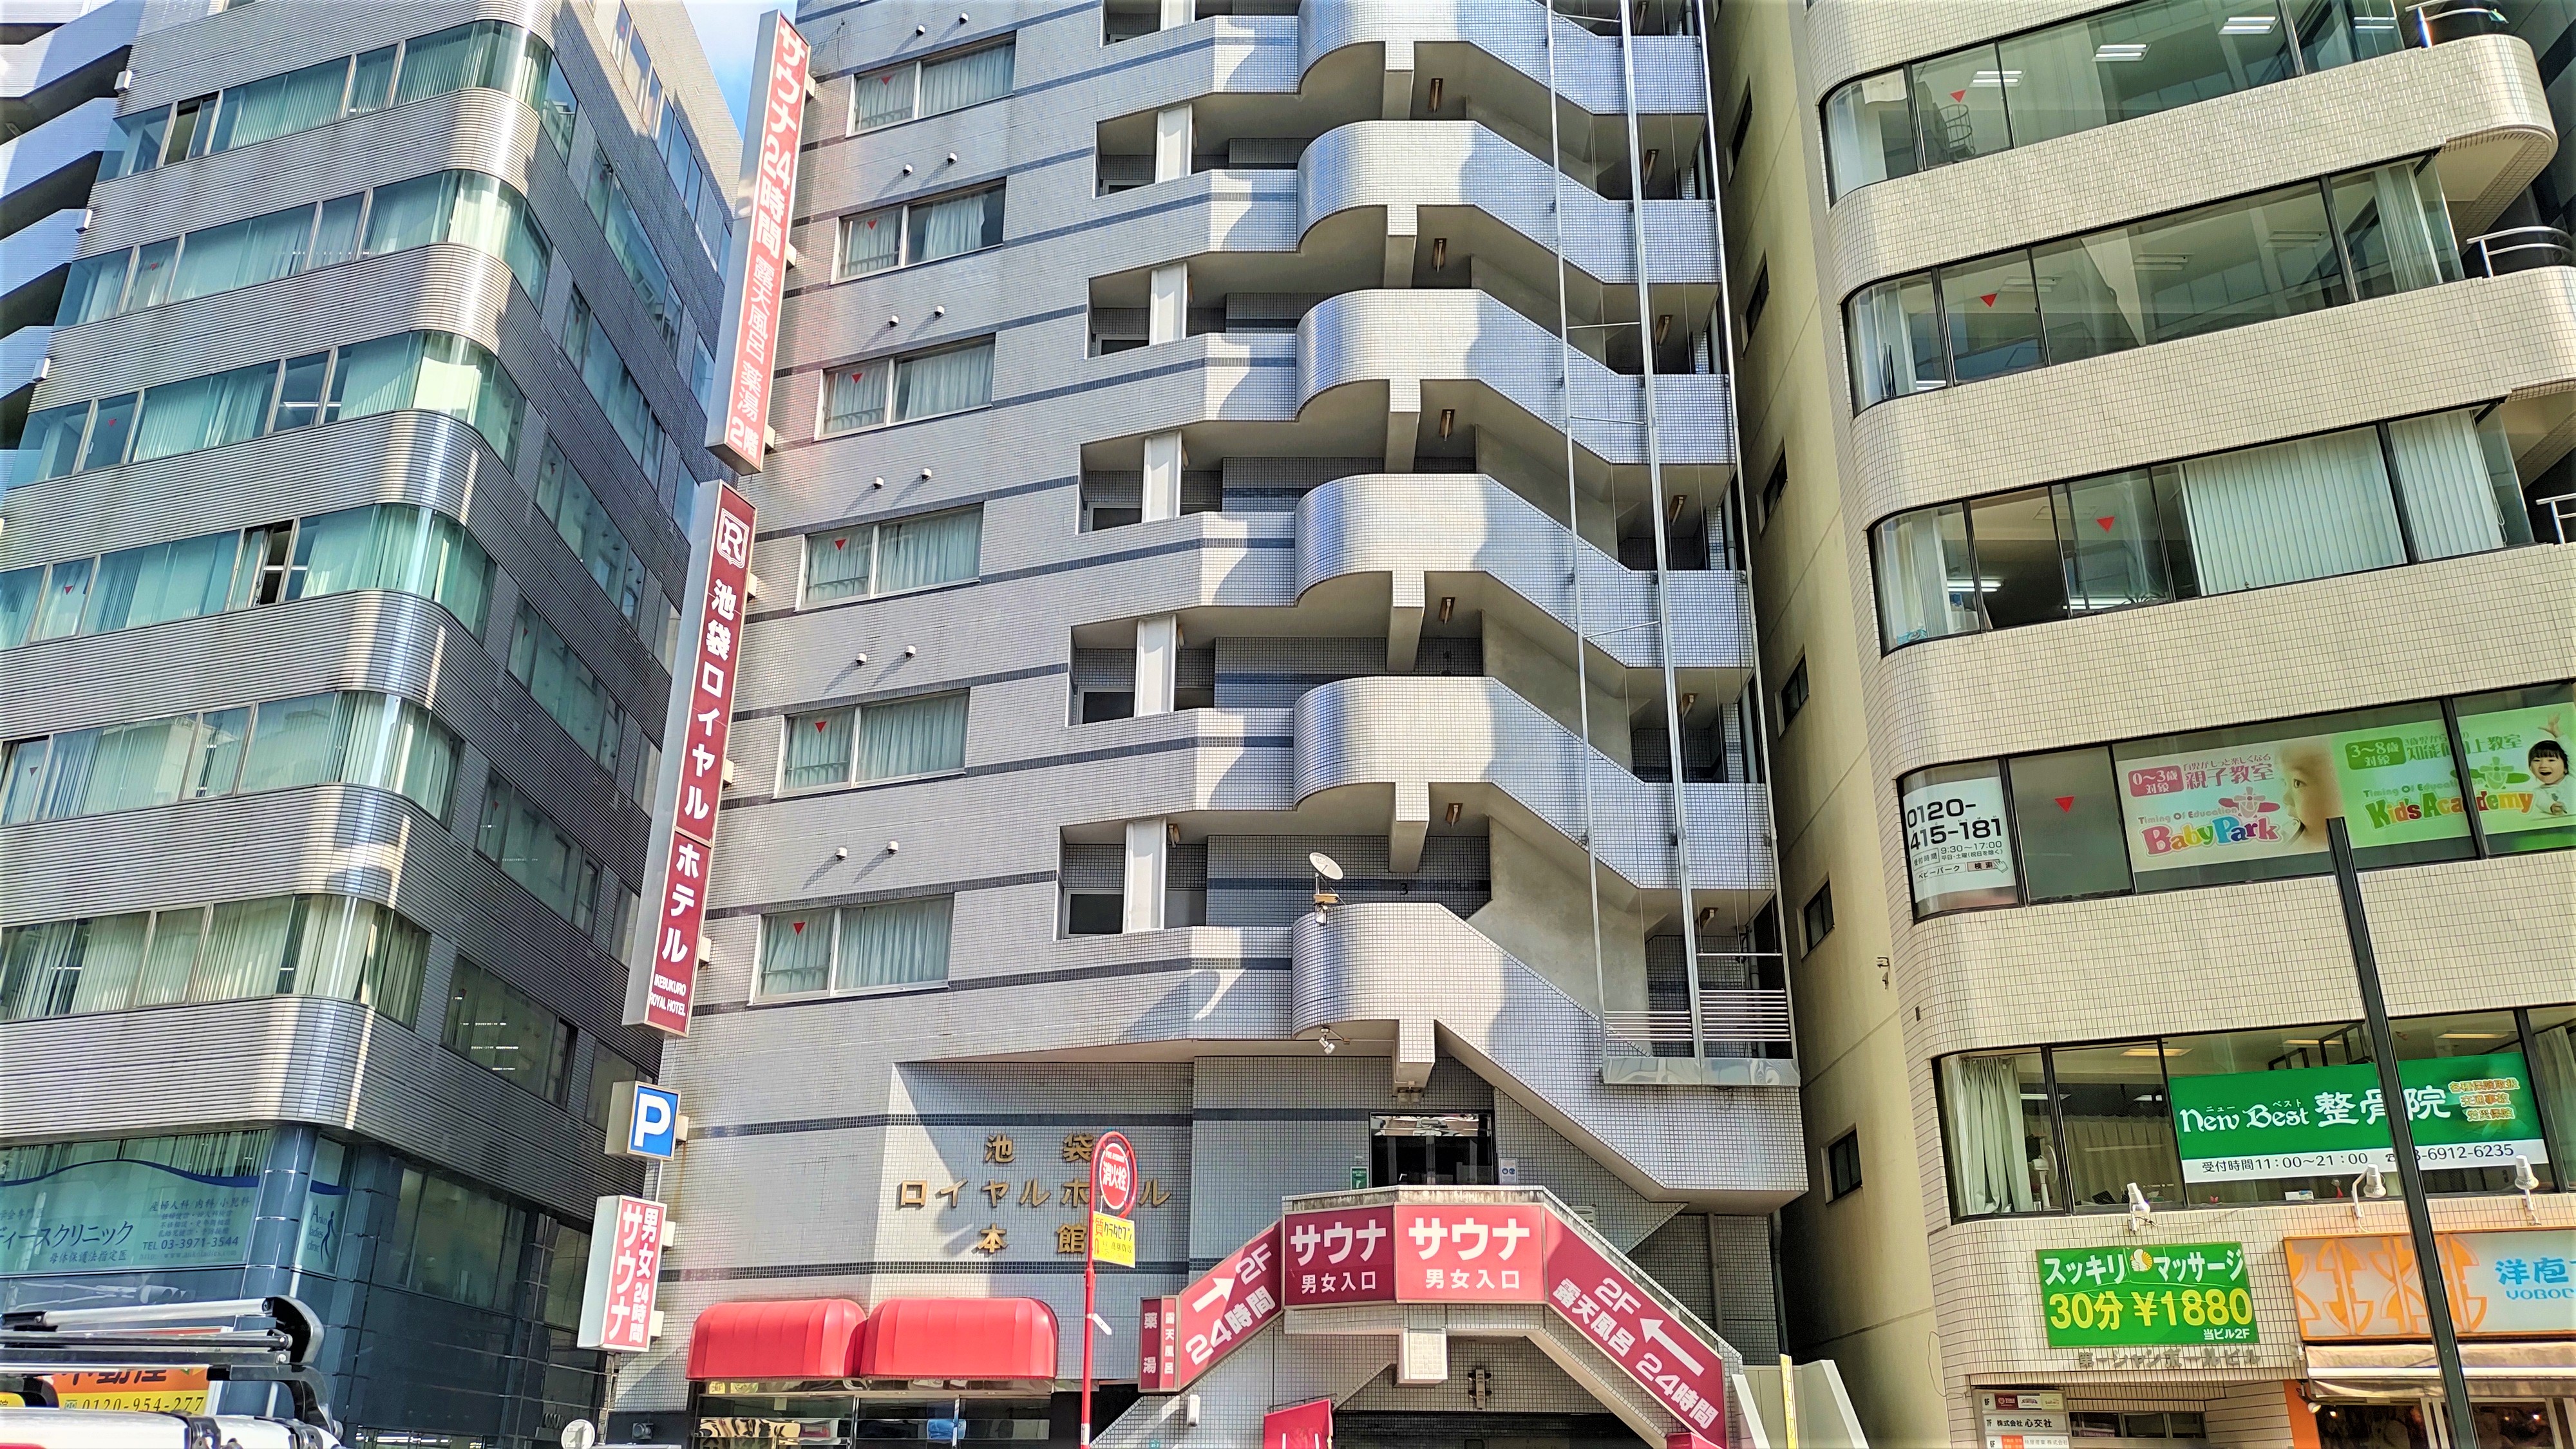 東京で素泊まりのできる格安ホテルを探しています。